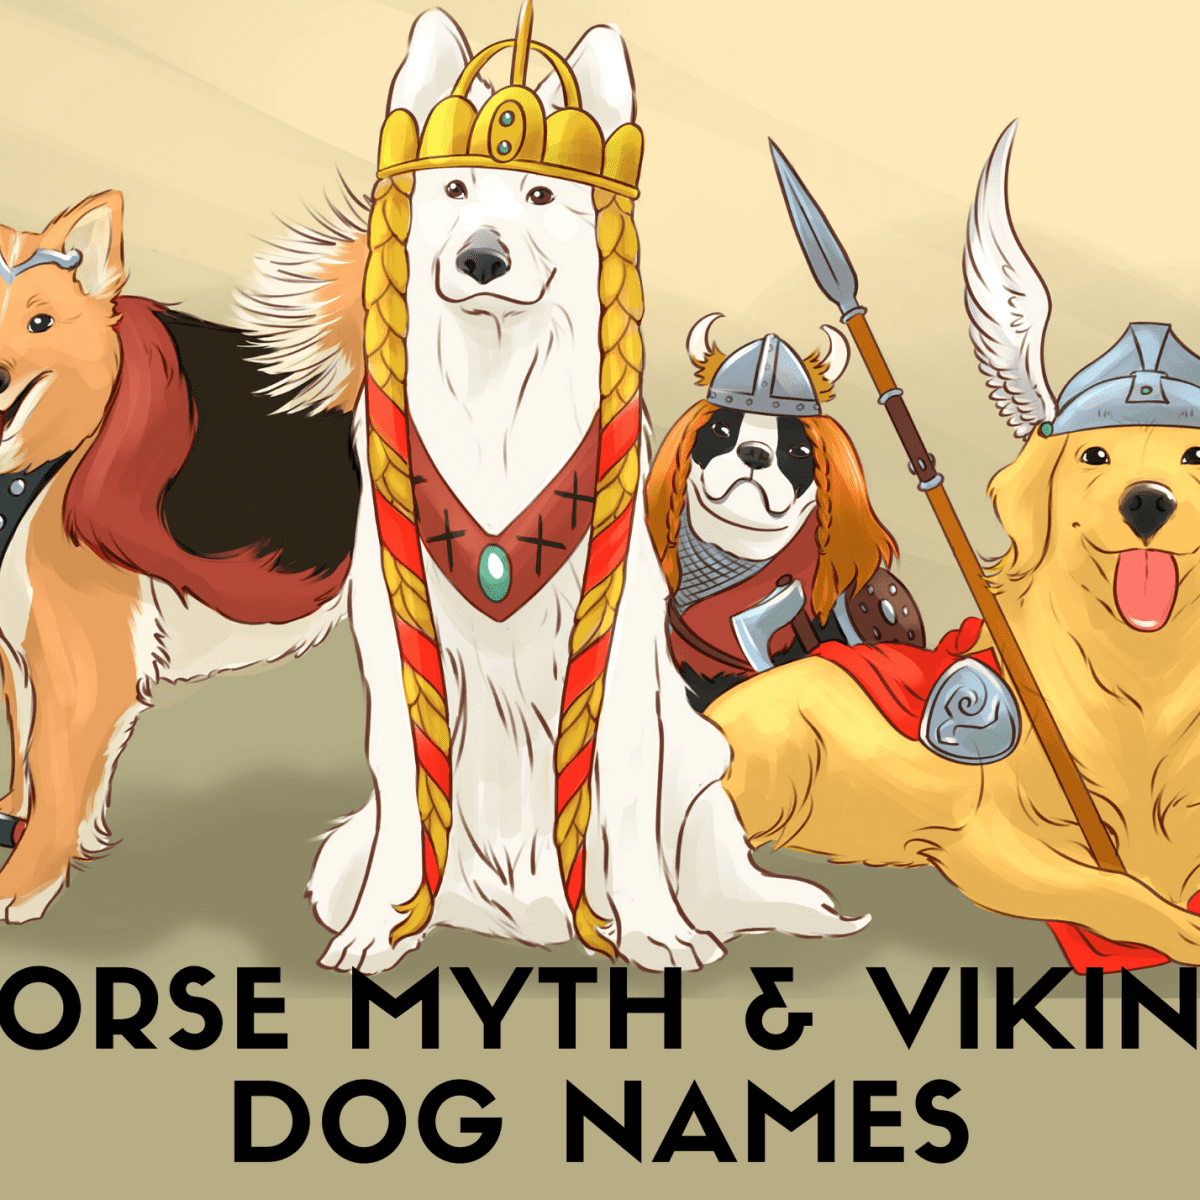 50+ Norse Mythology and Viking Dog Names - PetHelpful